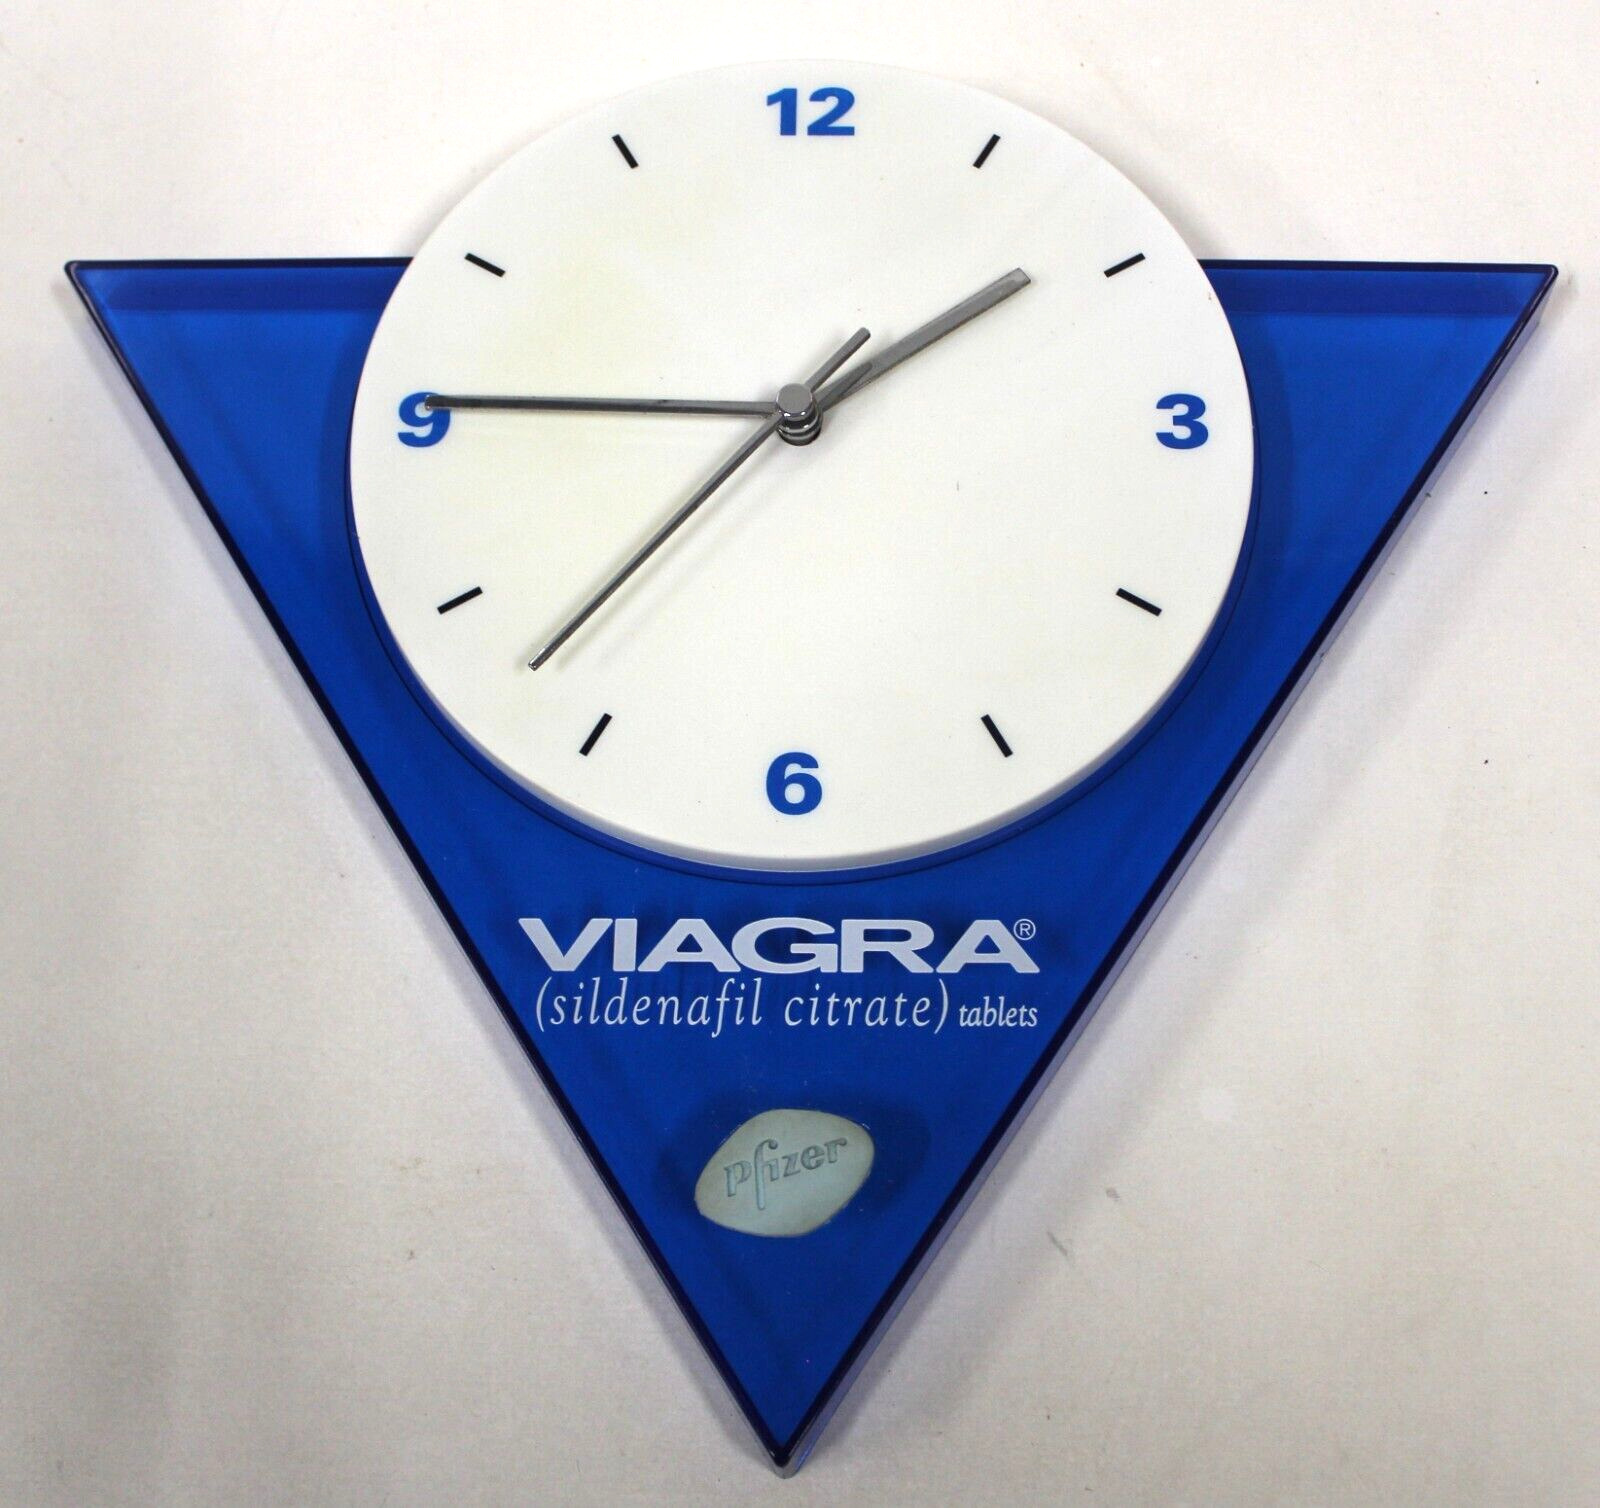 Vintage Viagra Advertising Wall Clock - Works